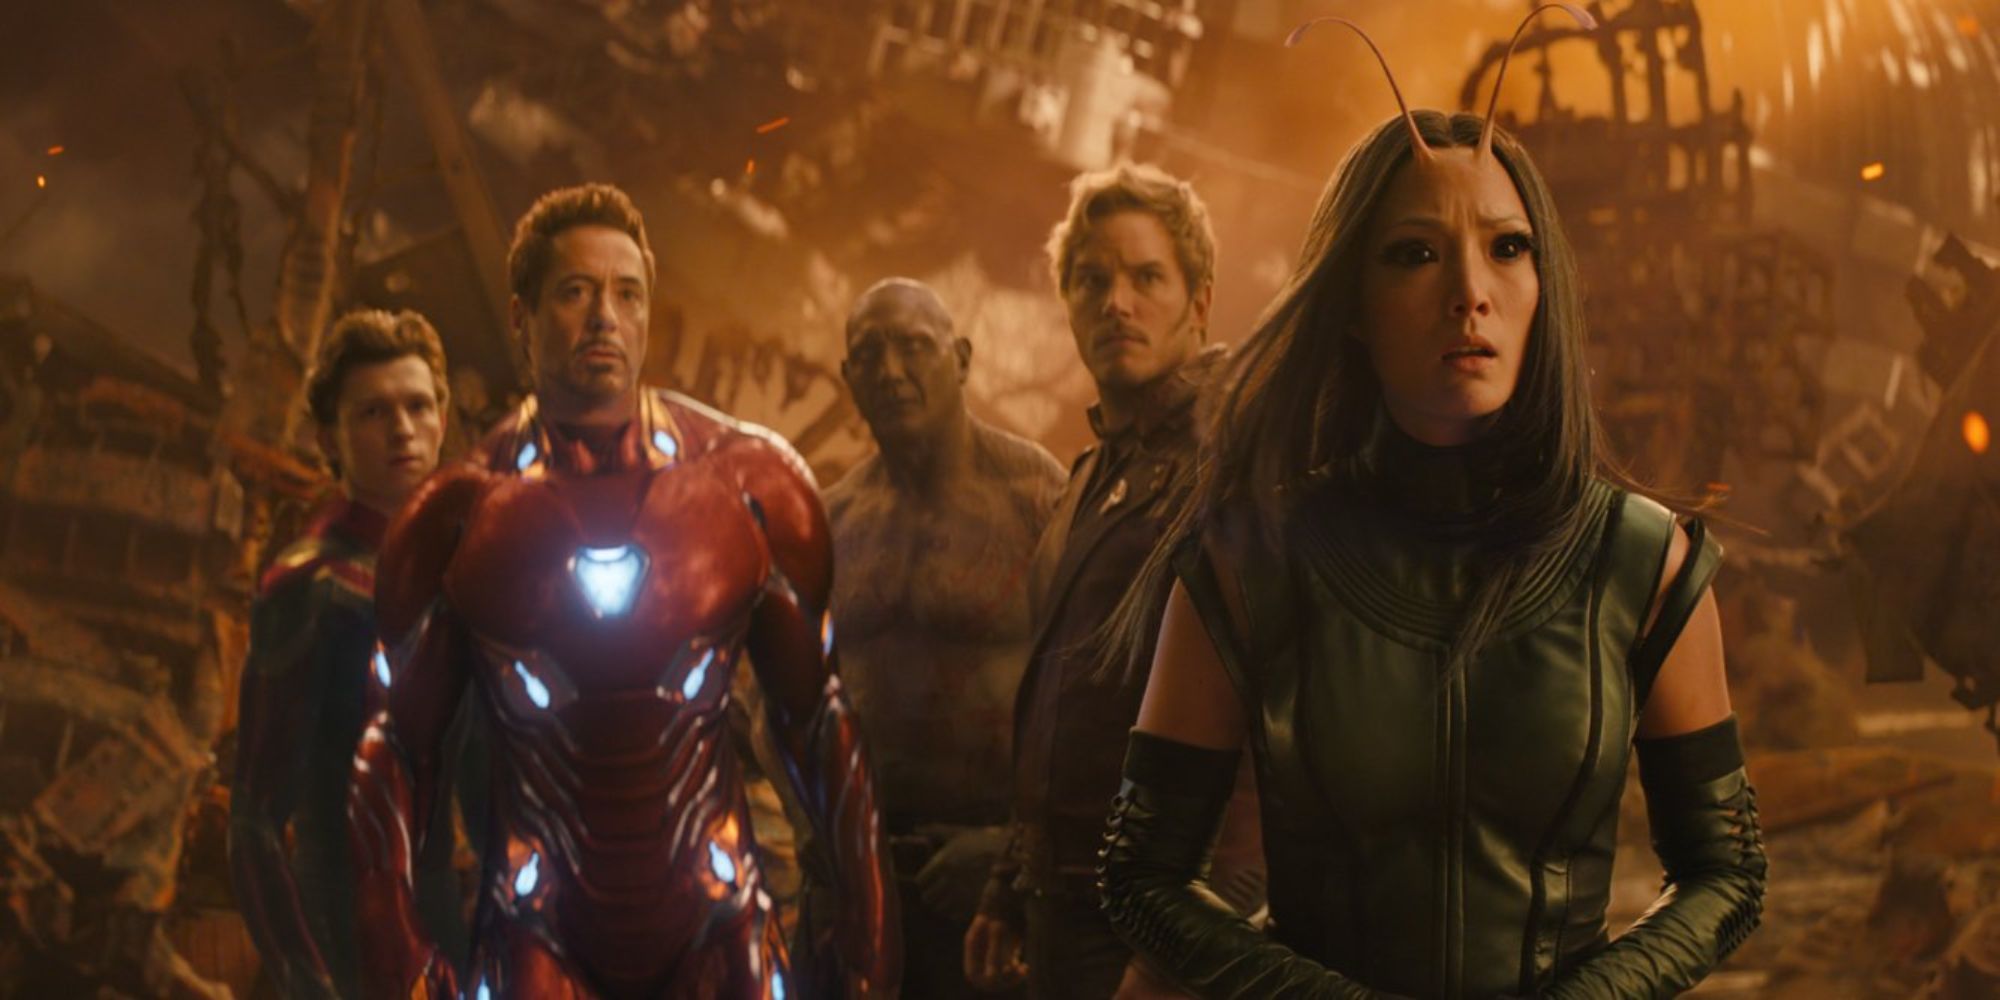 Homem-Aranha, Homem de Ferro, Drax, Star-Lord e Mantis estão juntos